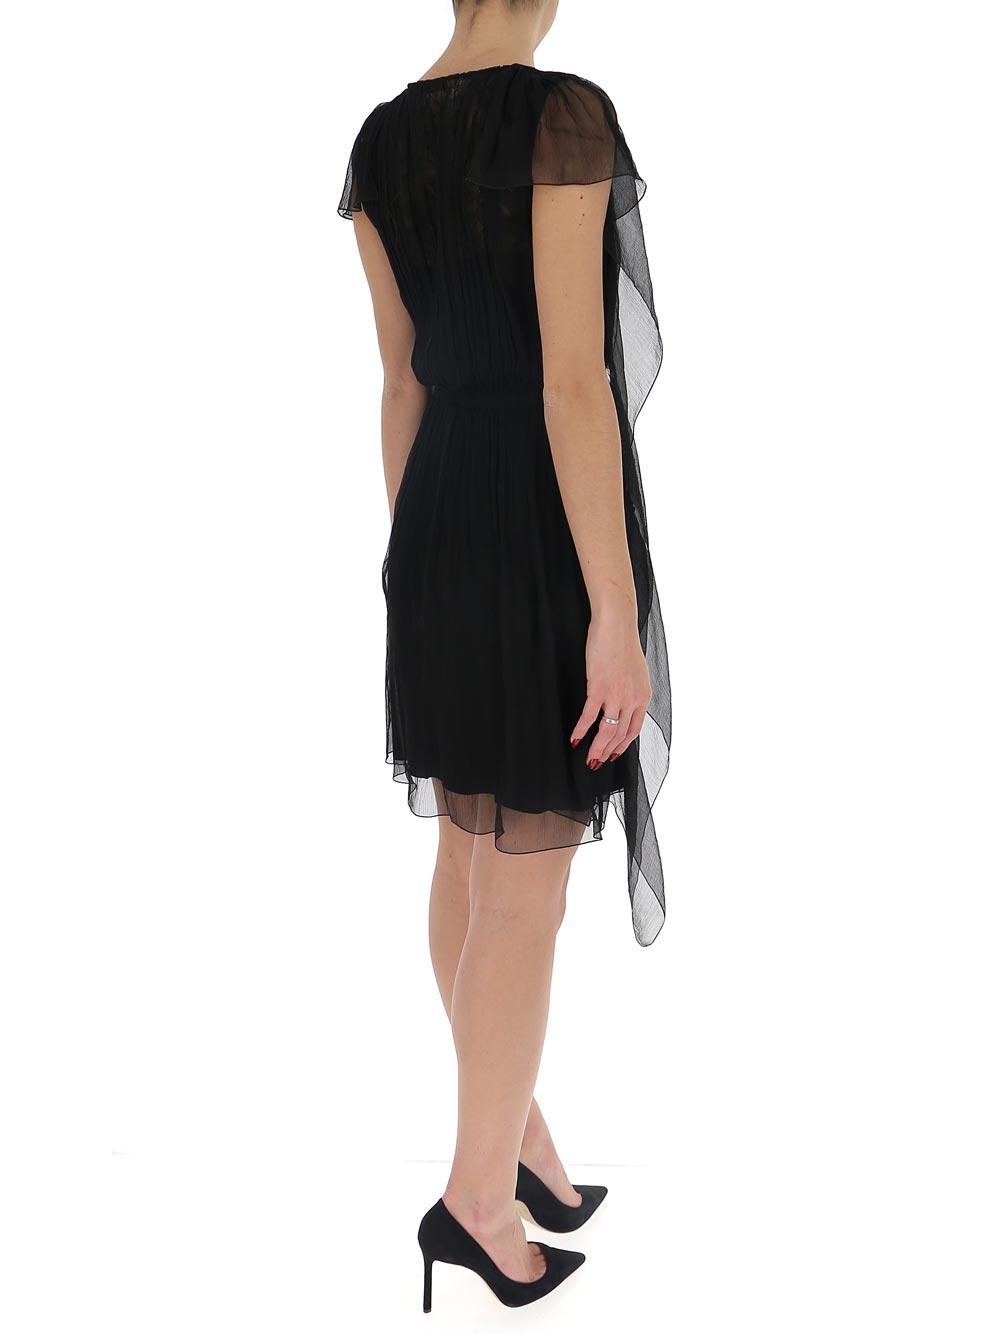 Alberta Ferretti Lace Dress in Black - Lyst